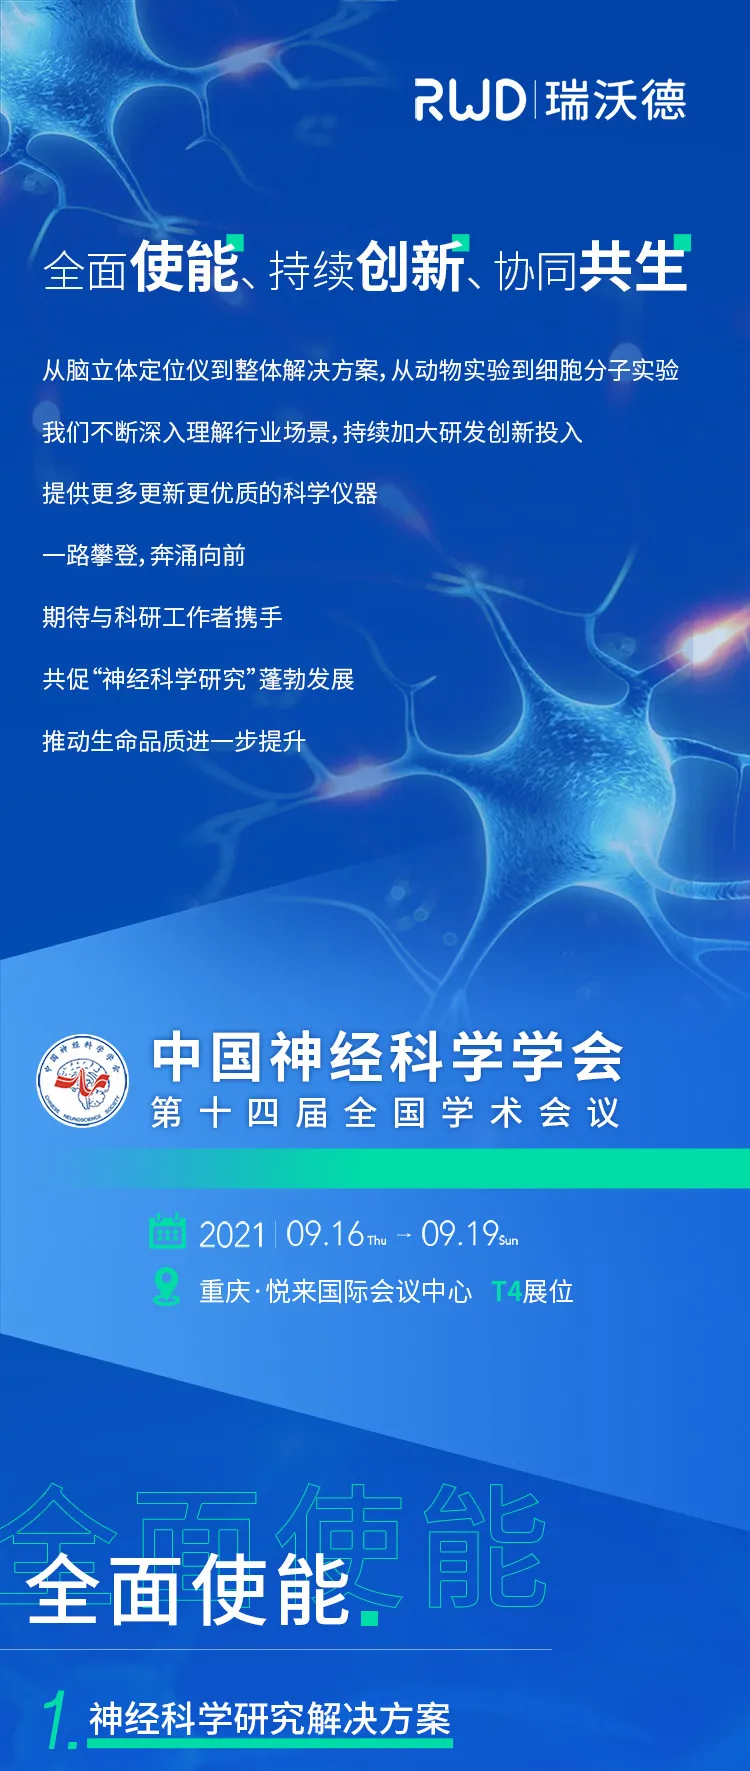 会议邀请︱瑞沃德<em>与您相约</em>中国神经科学学会第十四届全国学术会议